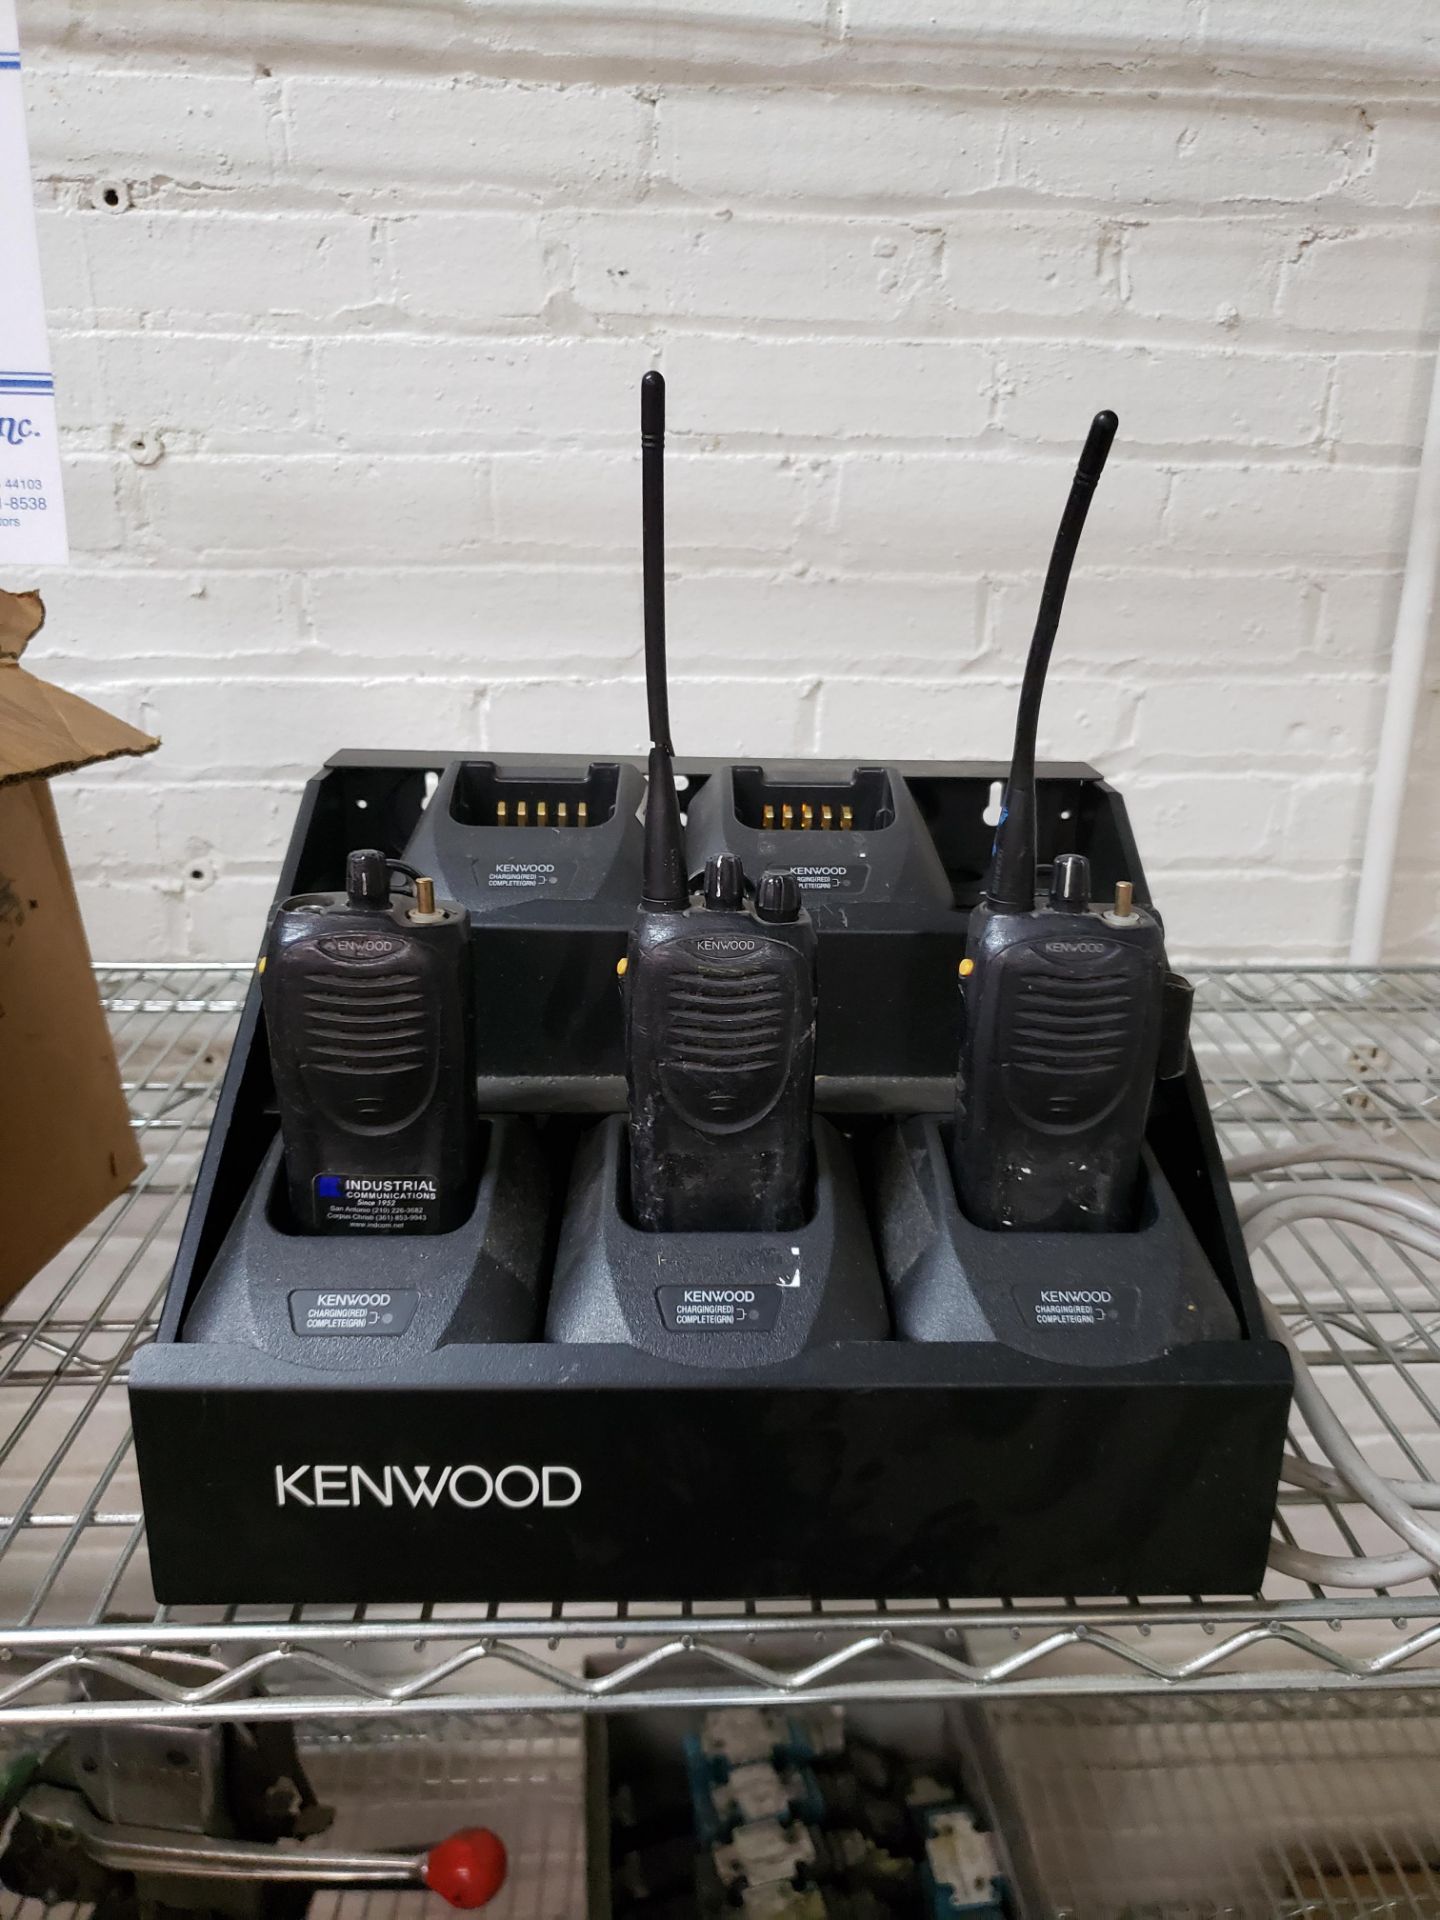 KENWOOD COMMUNICATION SYSTEM